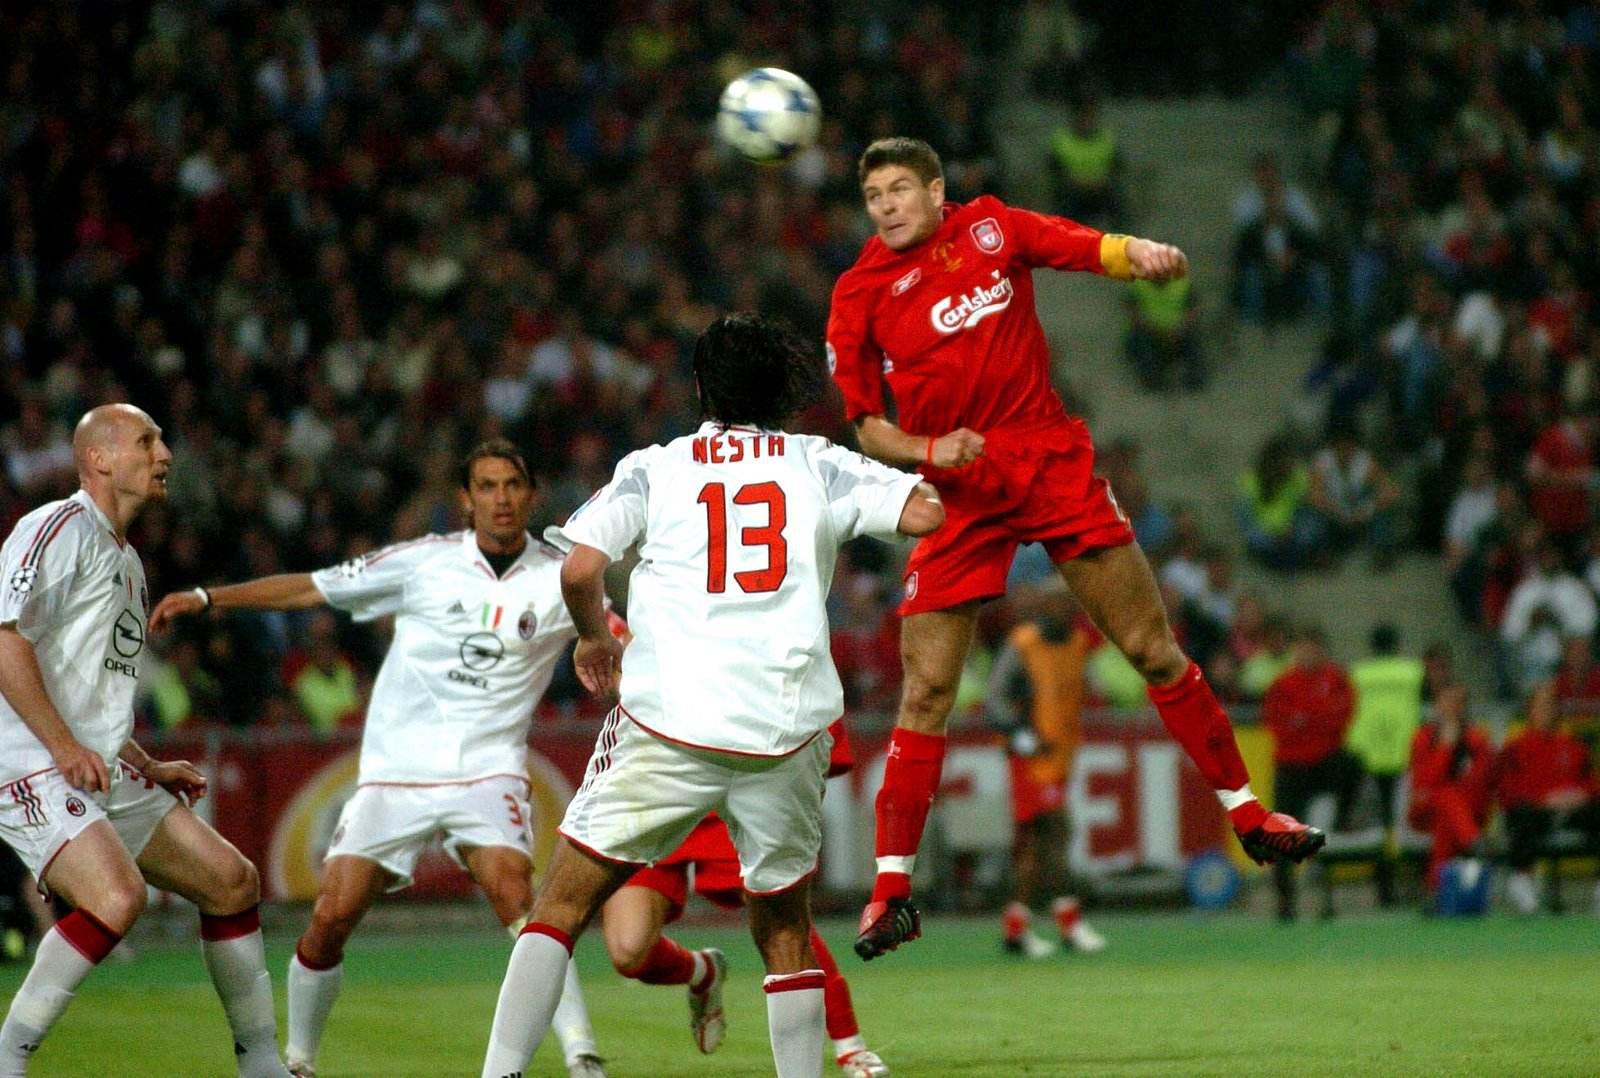 2003 04欧冠决赛 04——05欧冠决赛伊斯坦布尔奇迹(1)